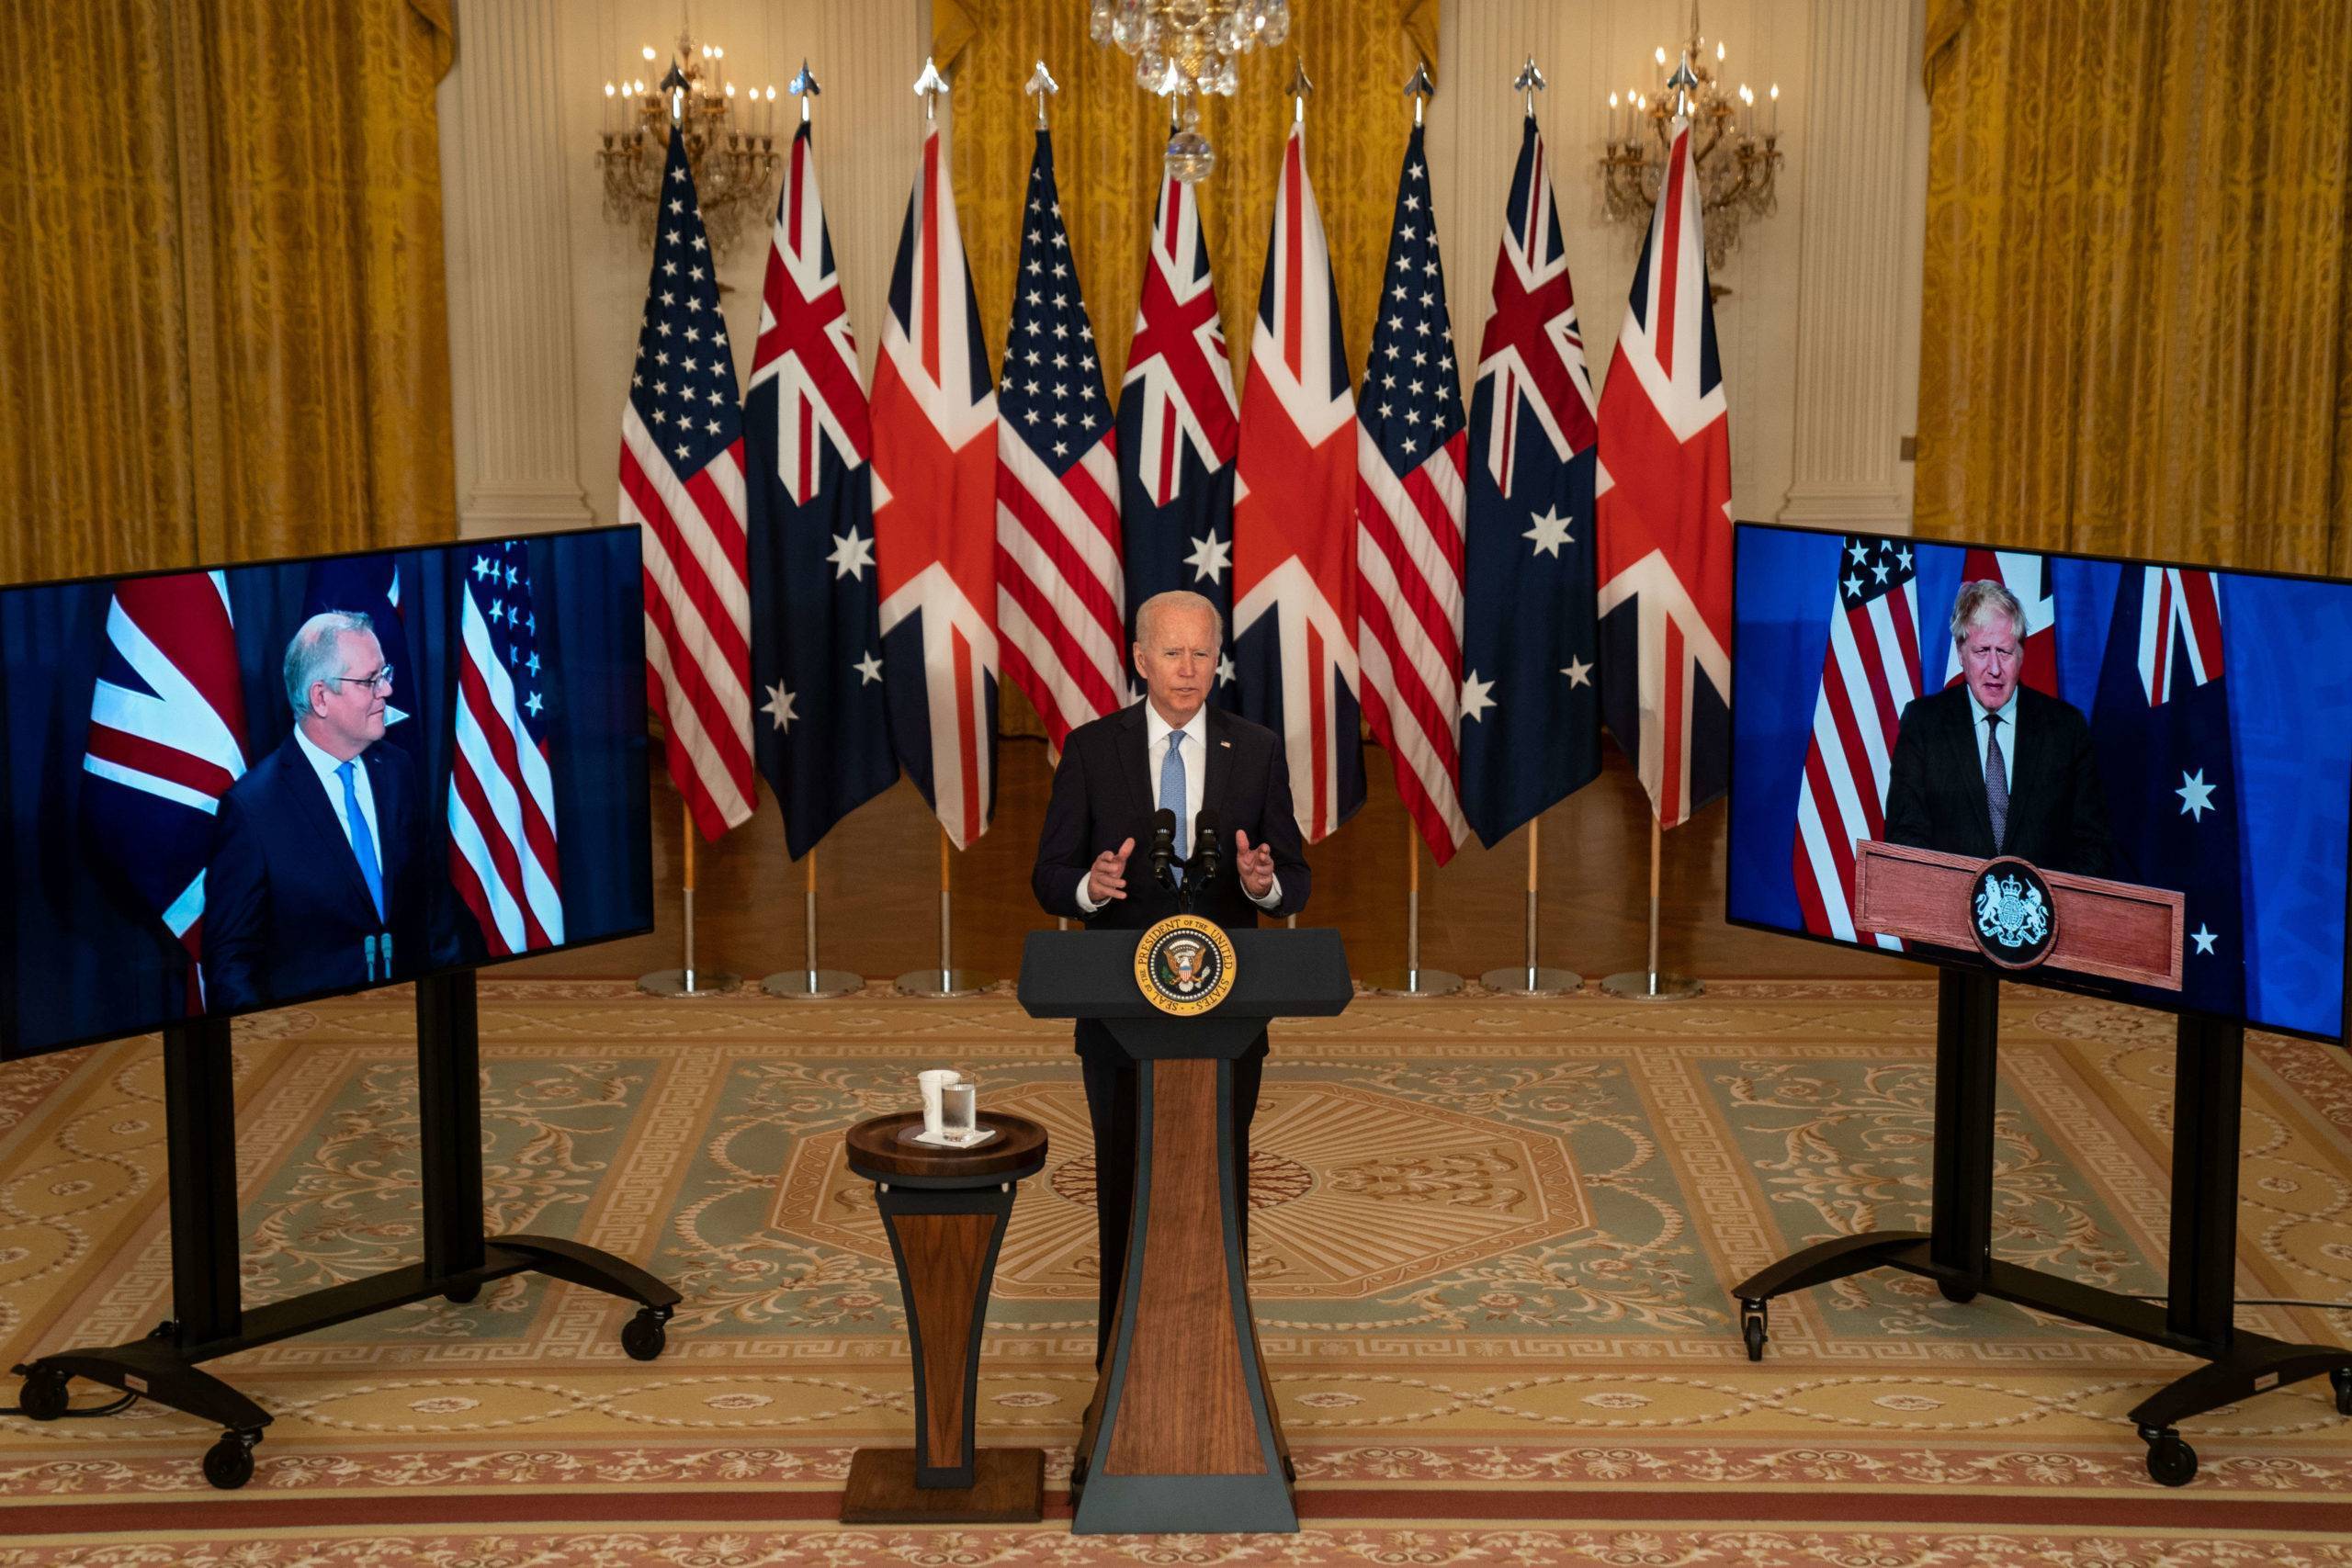 Le président Biden annonce que les États-Unis vont partager la technologie des sous-marins nucléaires avec l'Australie. 15 sept. 2021
Mandatory Credit: Photo by Kent Nishimura/Los Angeles Times/Shutterstock (12448011k)